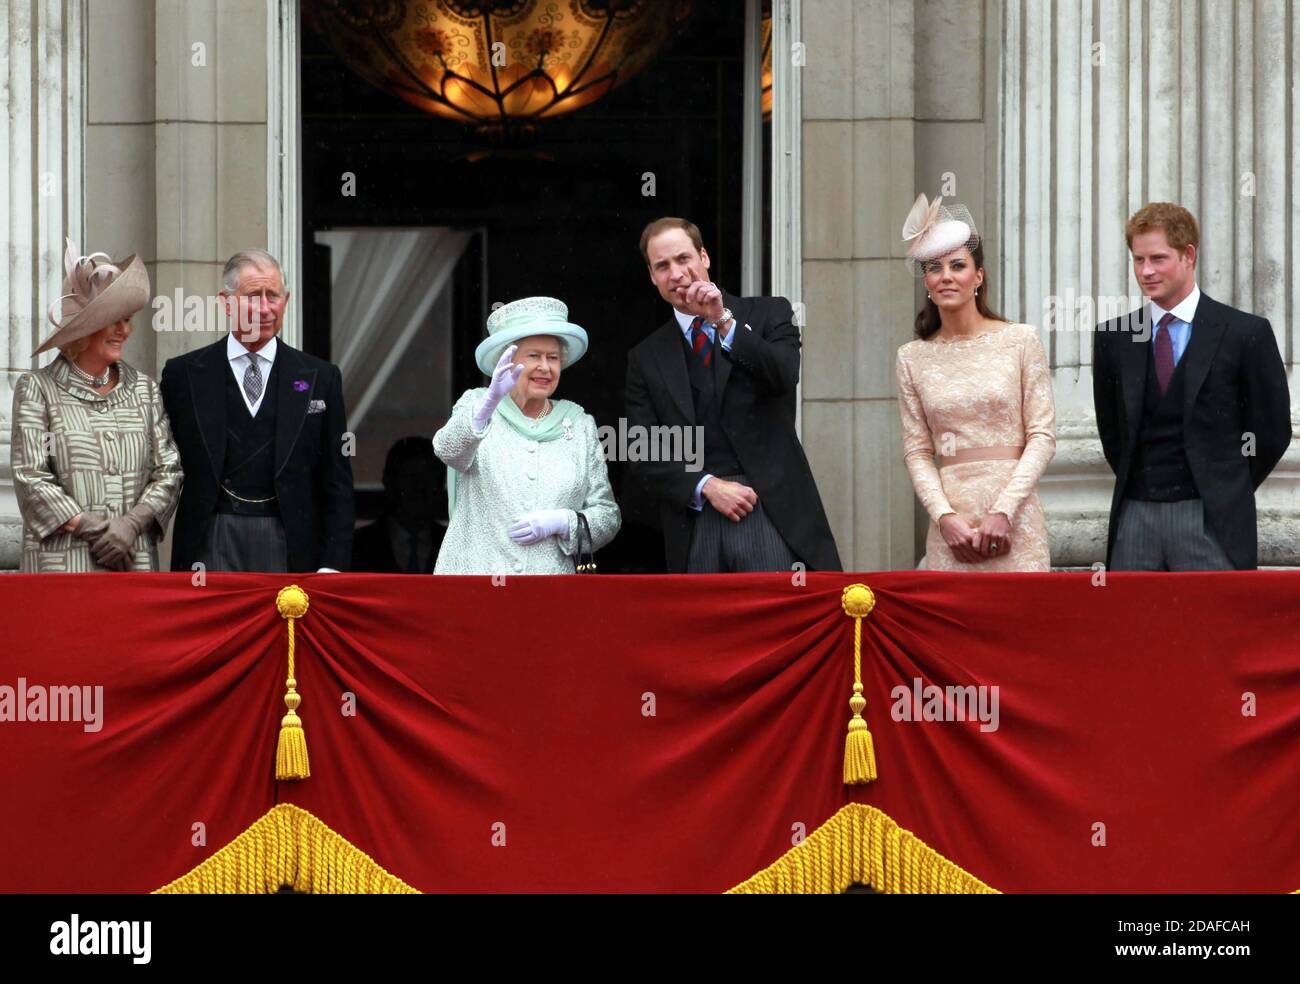 Foto del archivo fechada el 05/06/12 de (izquierda a derecha) la Duquesa de Cornwall, el Príncipe de Gales, la Reina Isabel II, el Duque y la Duquesa de Cambridge y el Príncipe Harry Queen apareciendo en el balcón del Palacio de Buckingham durante las celebraciones del Jubileo de Diamante. Foto de stock